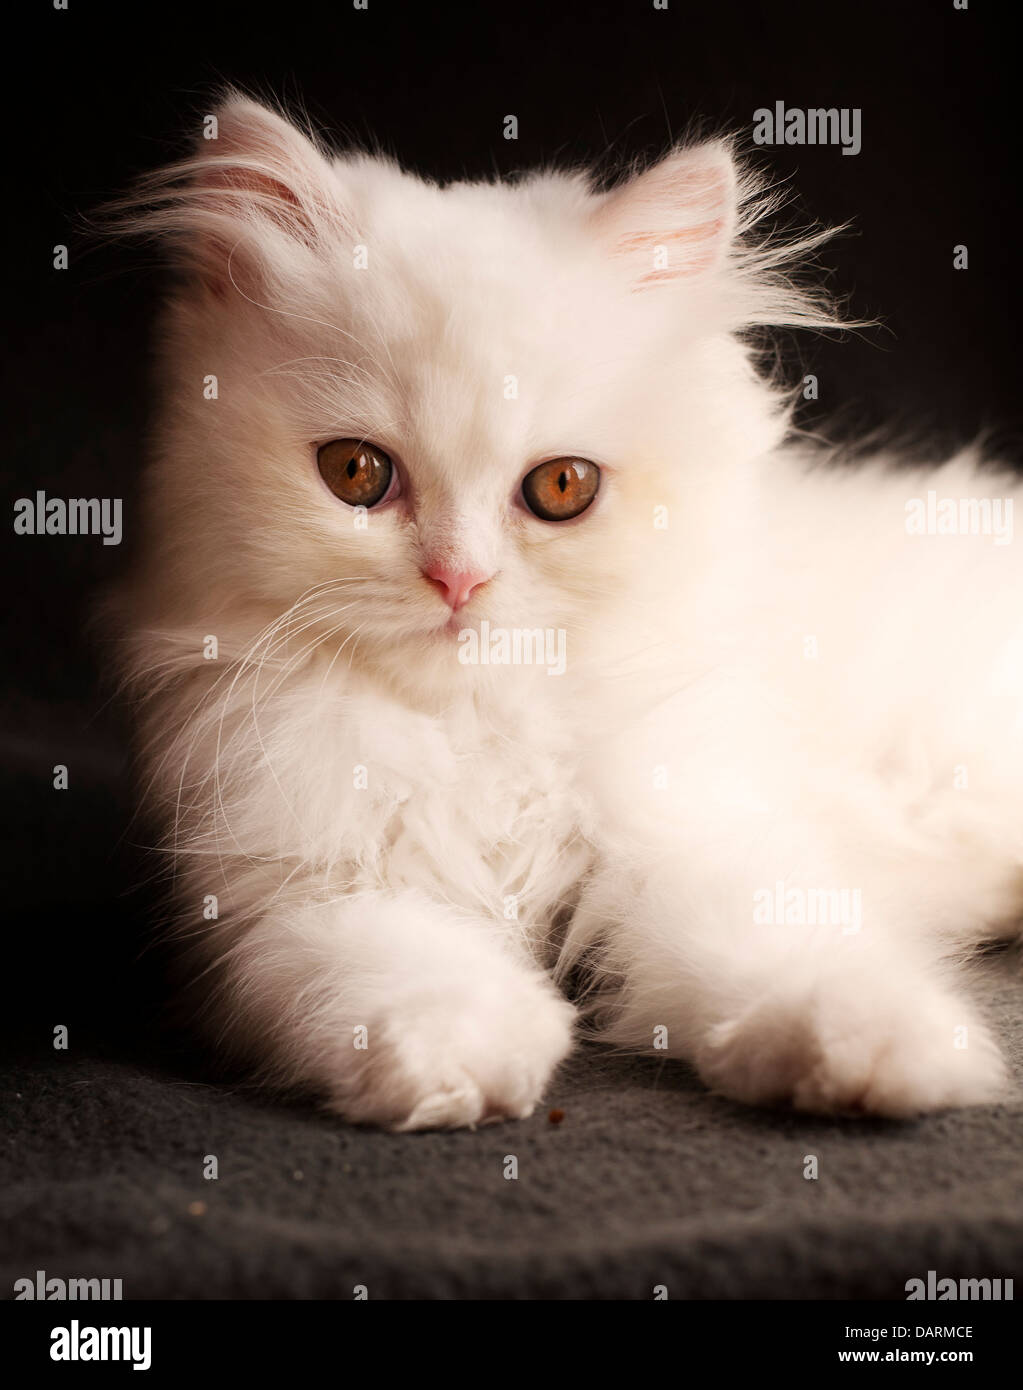 Adorable white Persian kitten Stock Photo